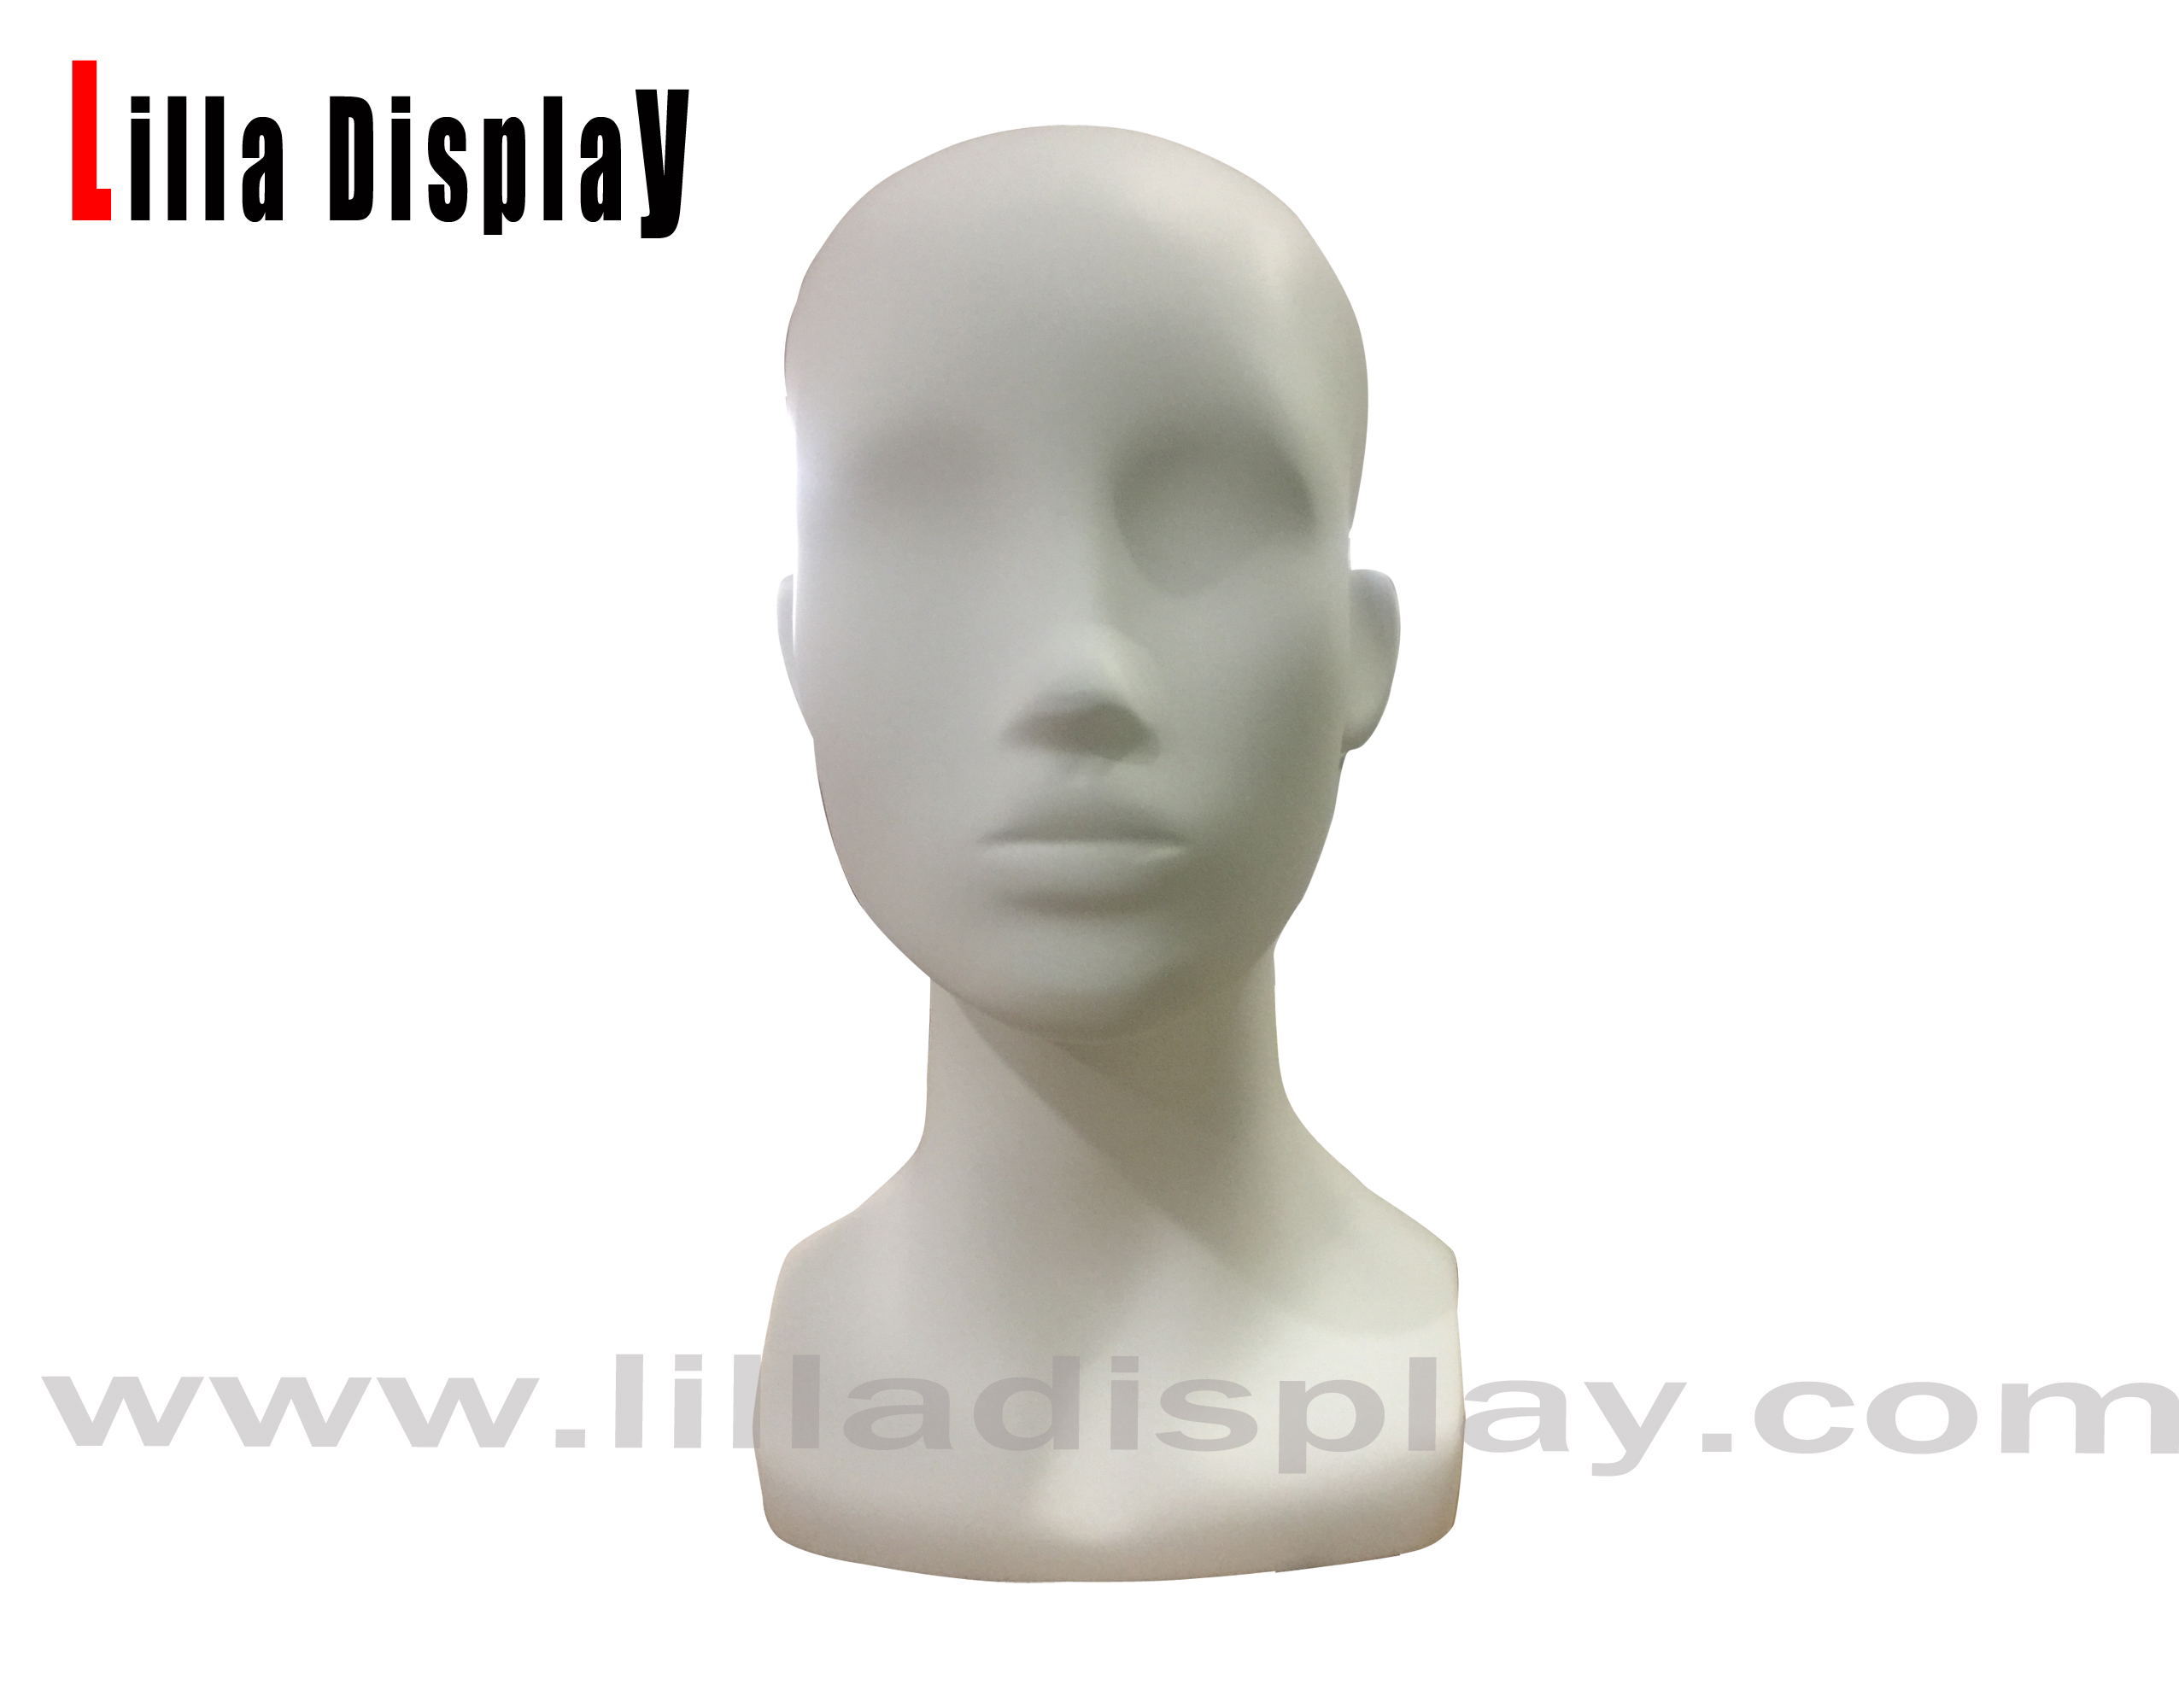 lilladisplay hvid farve kvinde mannequin hoved med skuldre Jolin